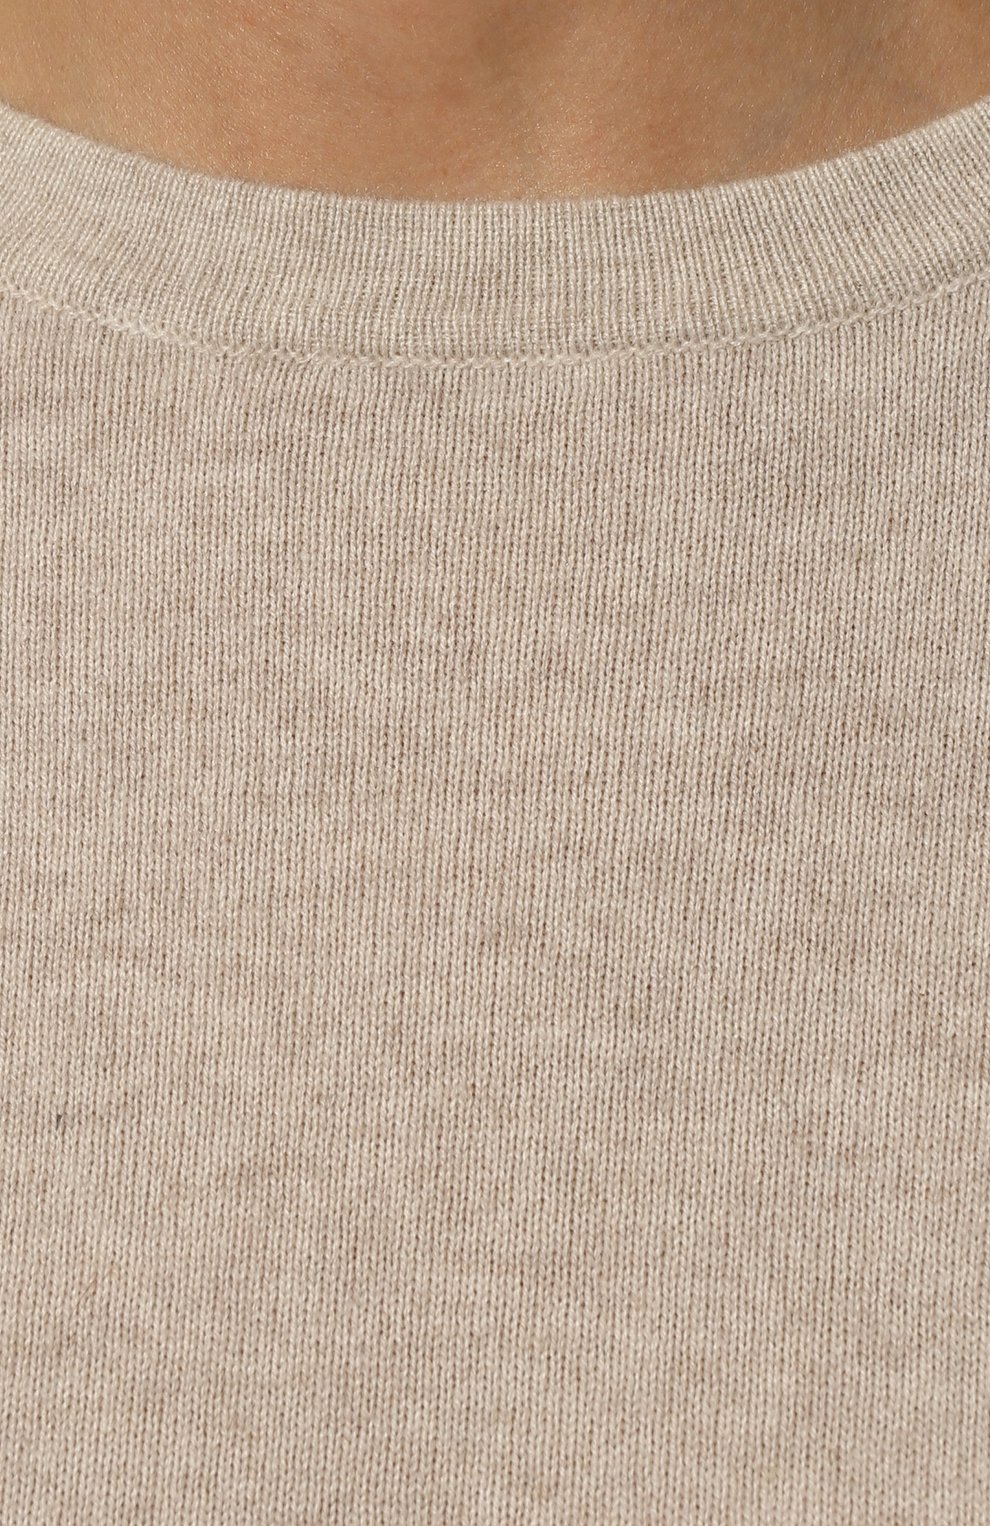 Женский кашемировый пуловер BRUNELLO CUCINELLI светло-бежевого цвета, арт. 221M12144400 | Фото 5 (Материал внешний: Шерсть, Кашемир; Рукава: Длинные; Длина (для топов): Стандартные; Женское Кросс-КТ: Пуловер-одежда; Размерность: Маломерит; Стили: Кэжуэл)